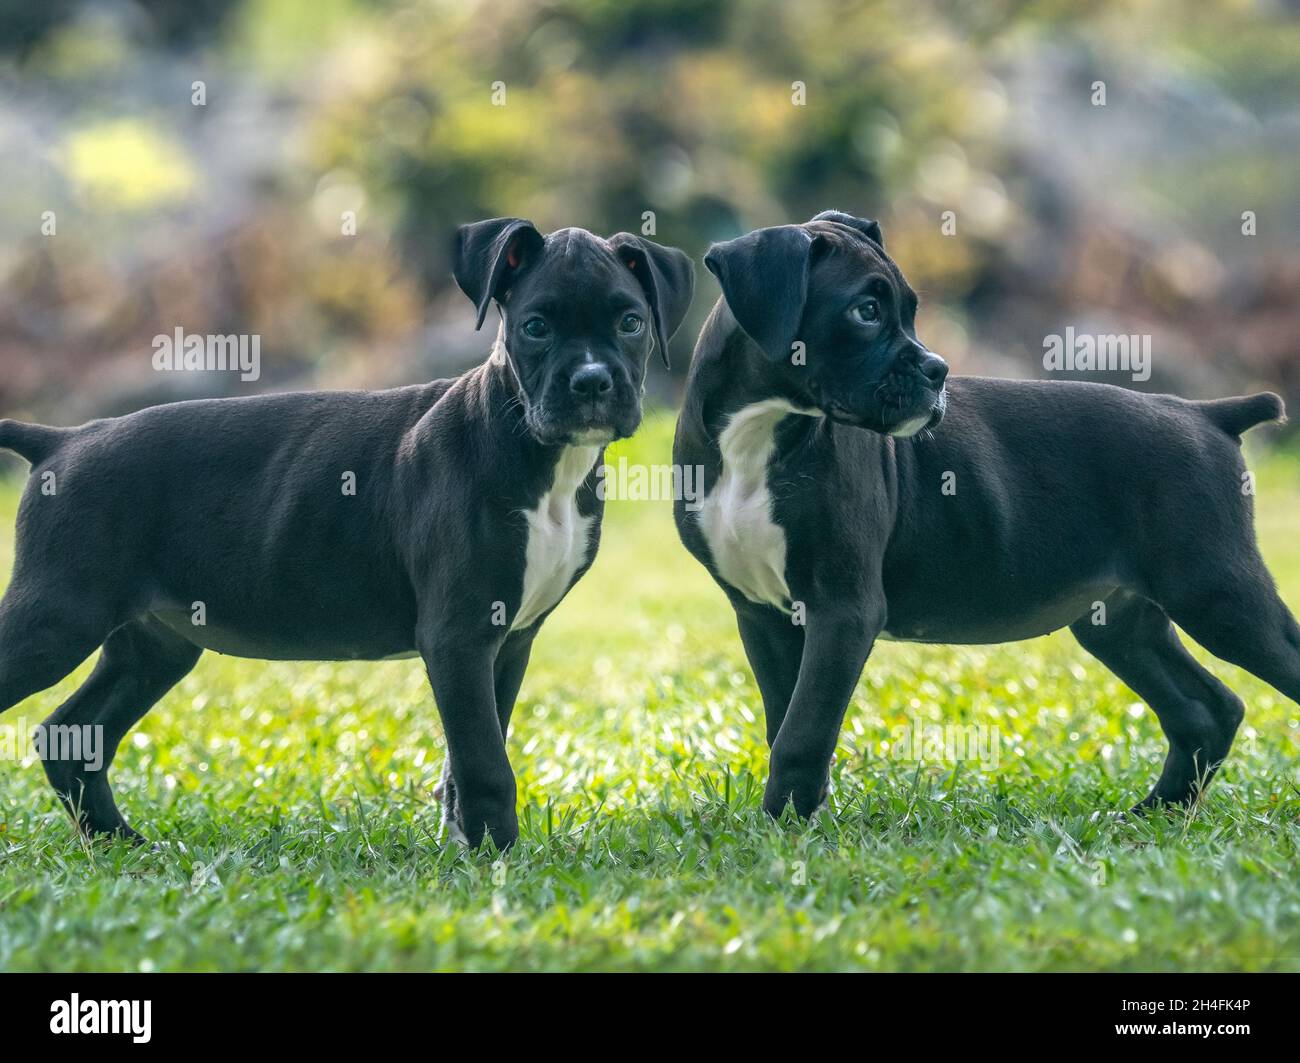 Alerte chien boxer noir de 9 semaines chiot joue sur pelouse Banque D'Images